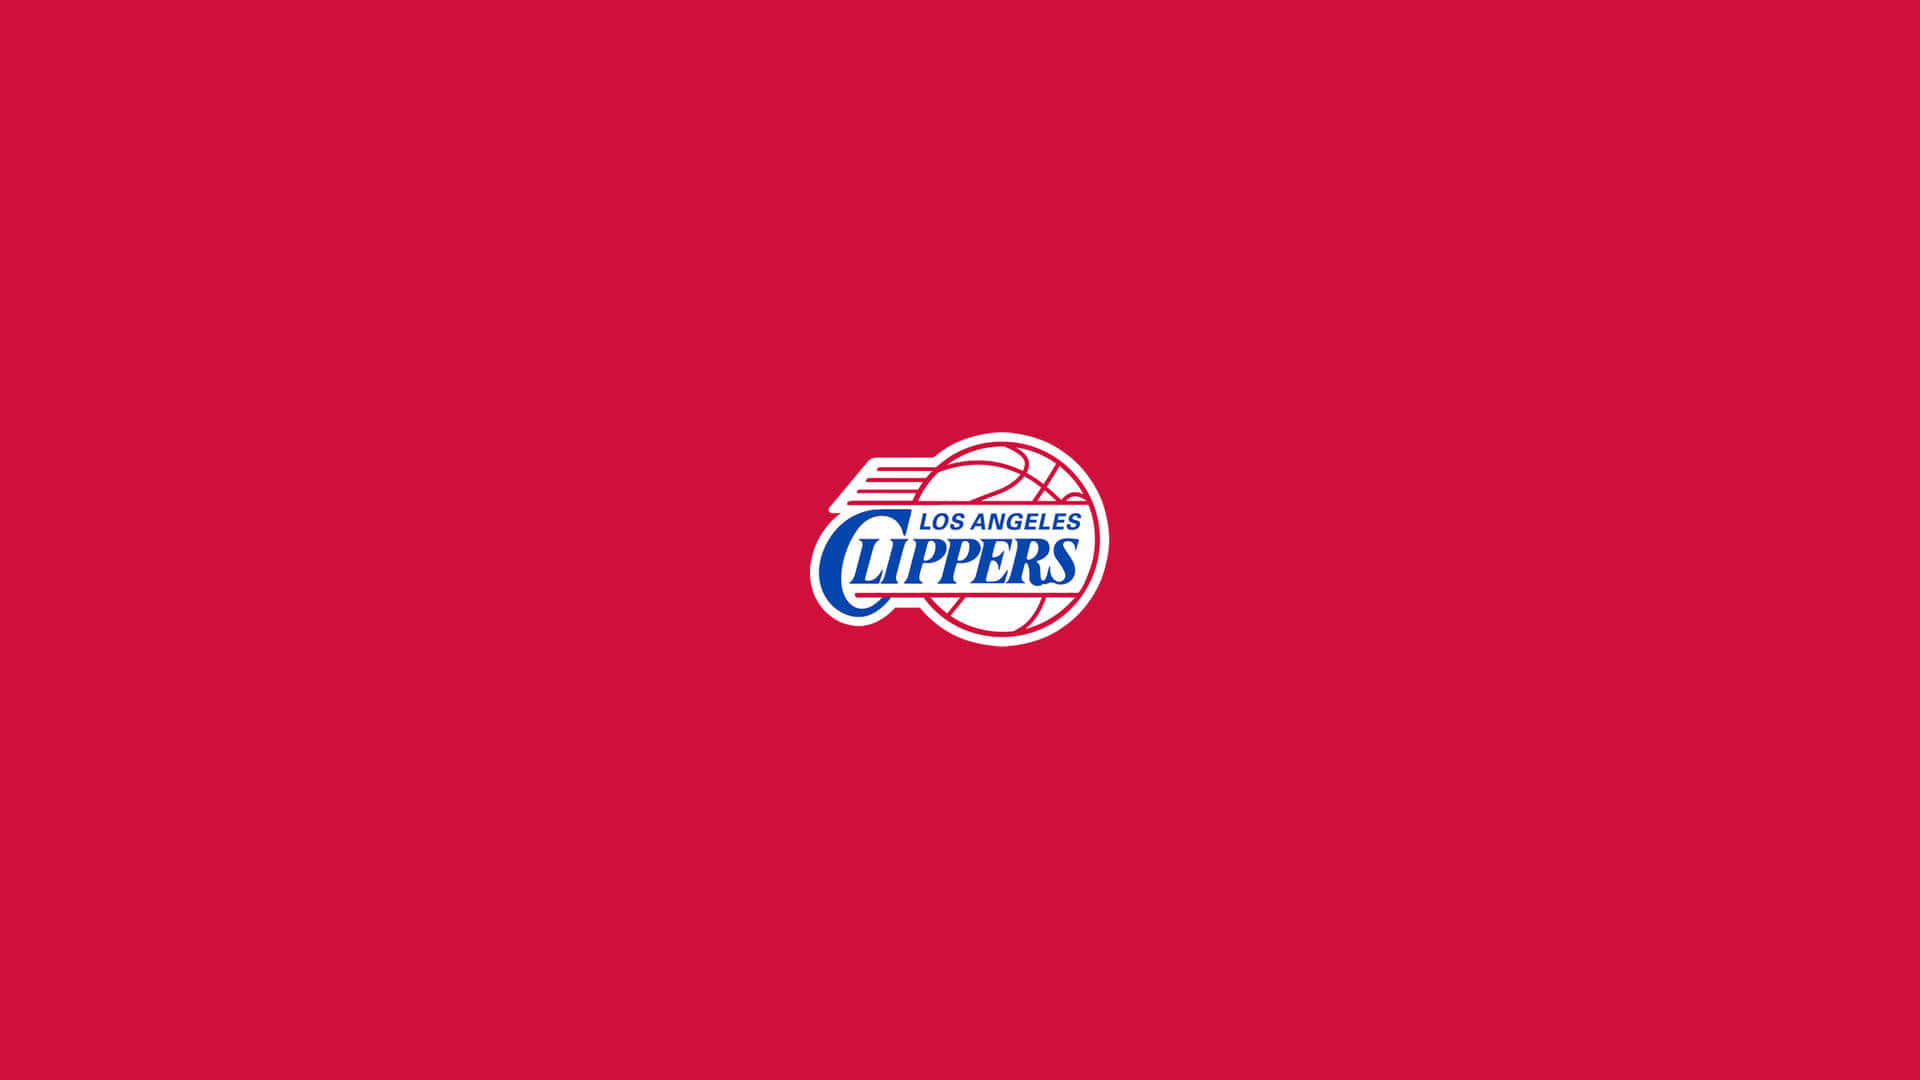 Papelde Parede Minimalista Vermelho Do Logo Do Time Da Nba La Clippers. Papel de Parede